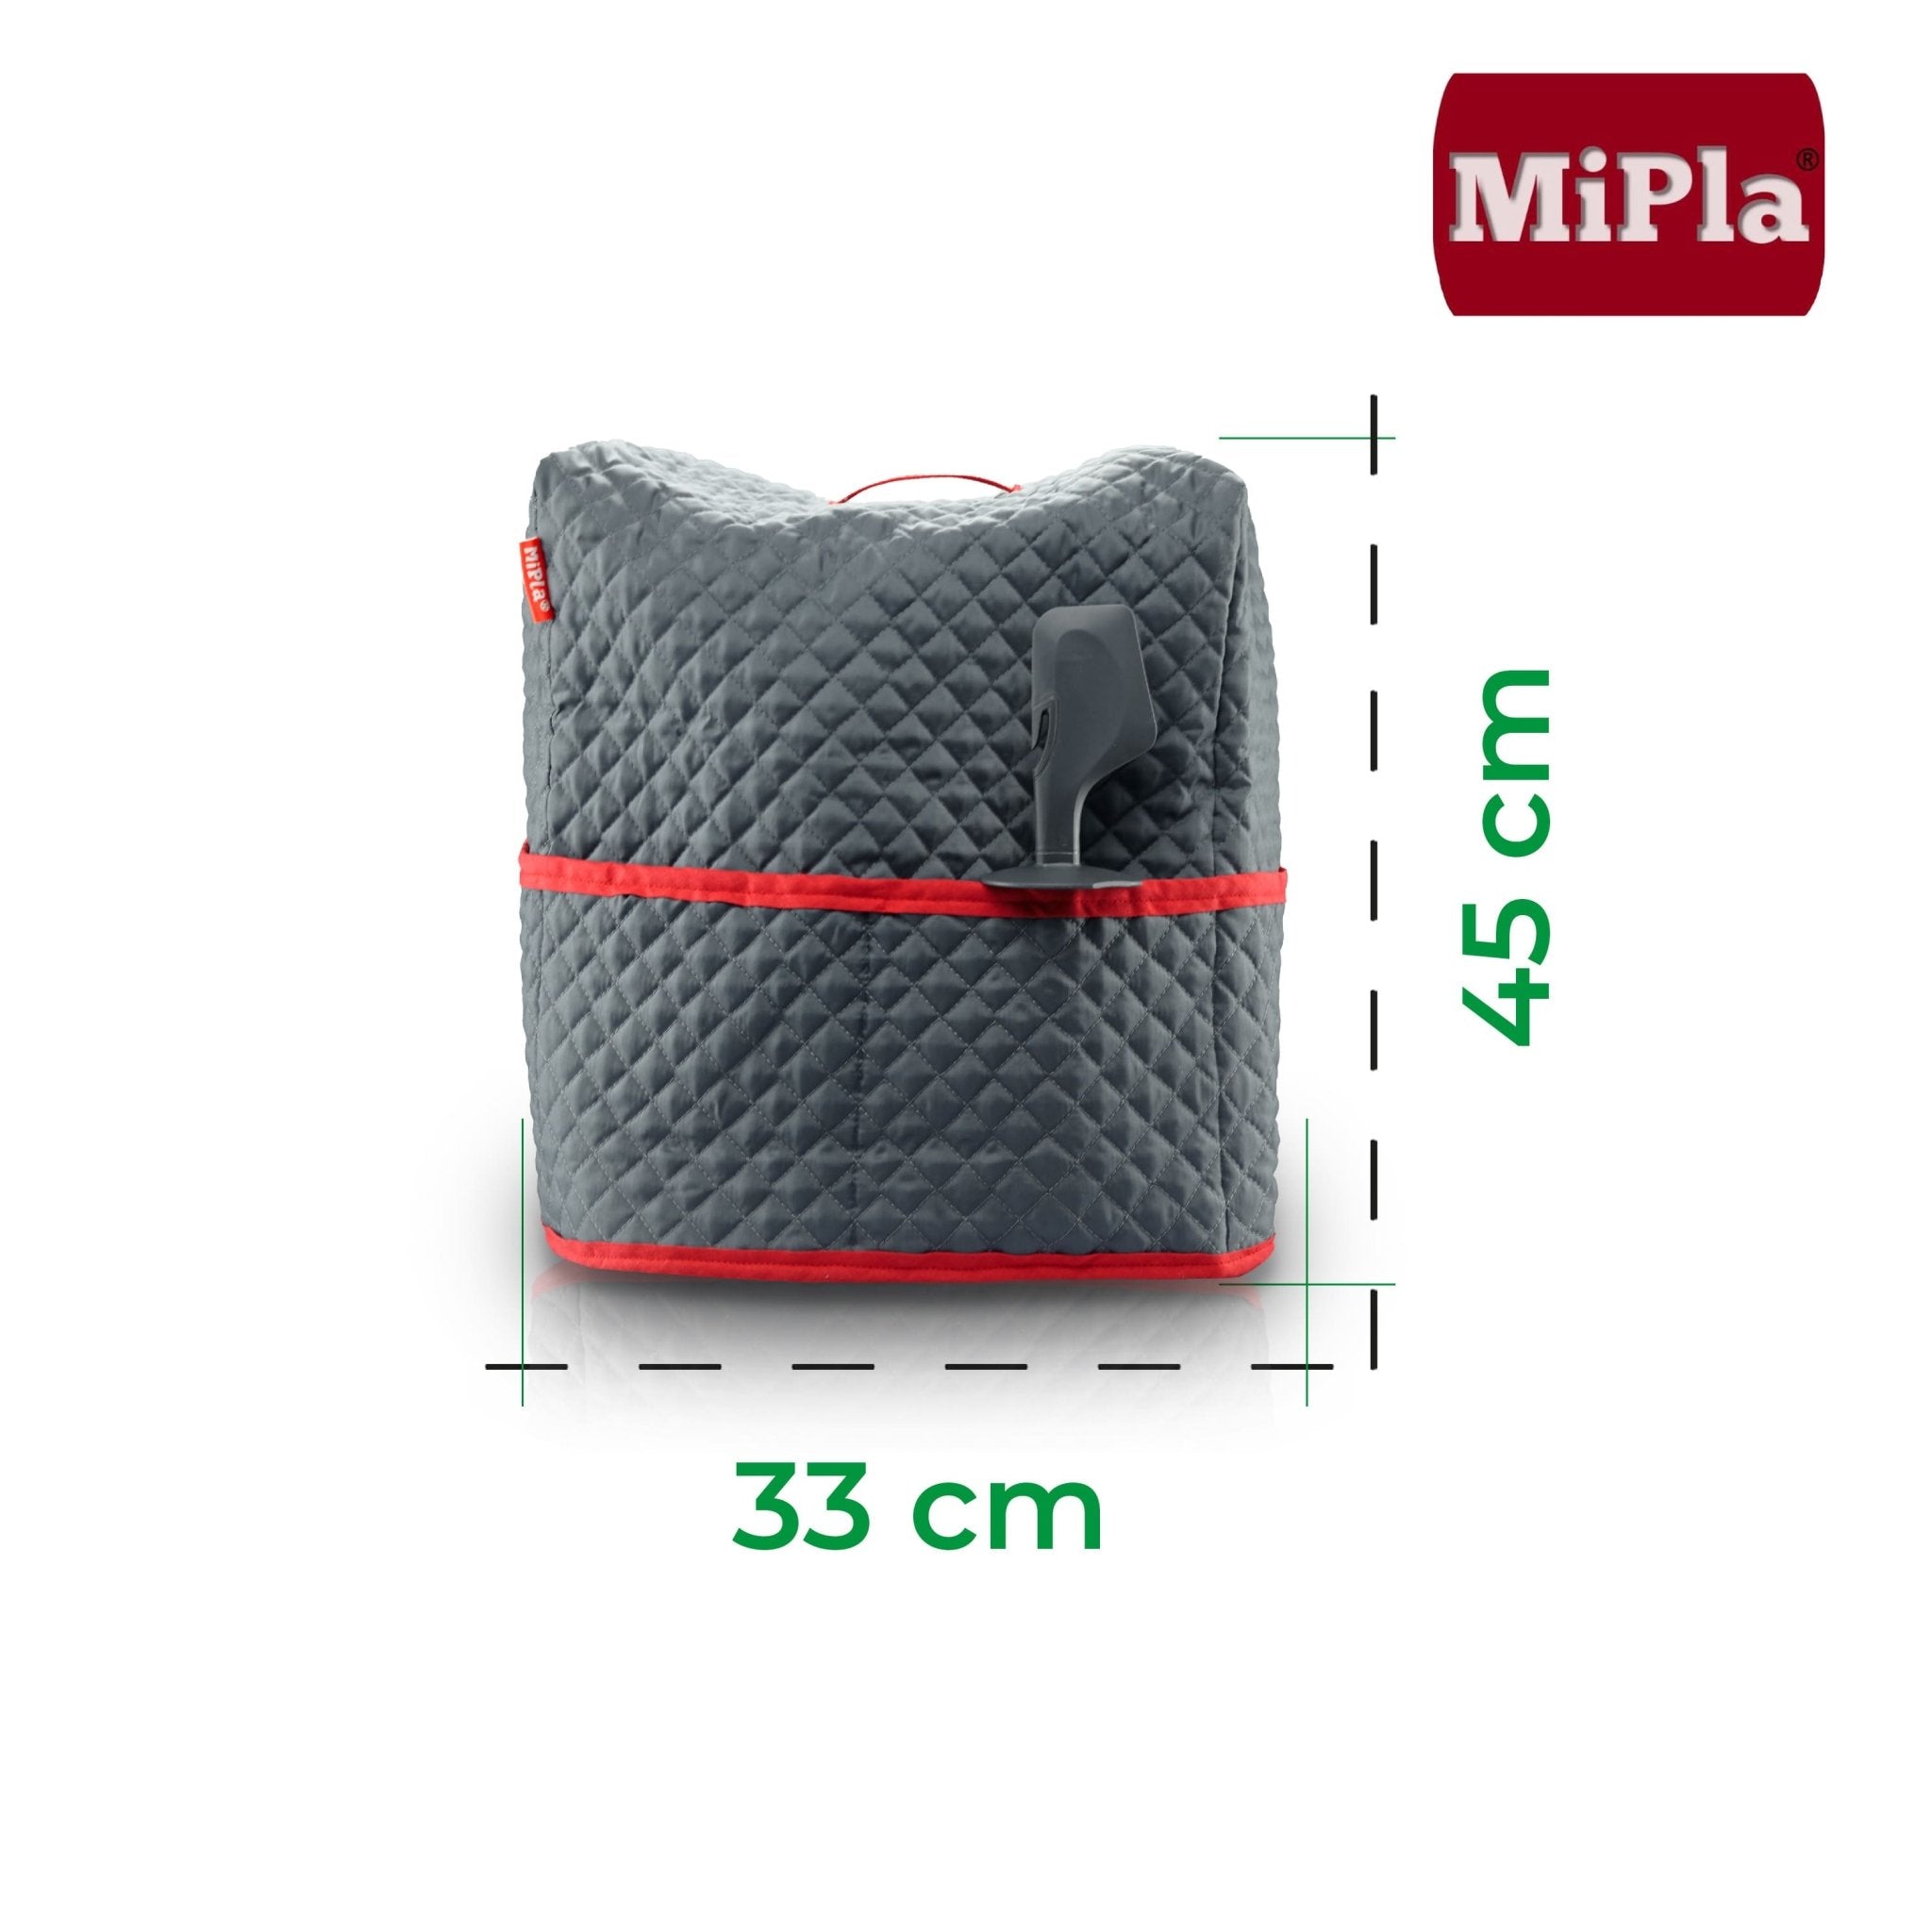 MiPla® | Abdeckhaube für Thermomix TM6, TM5 - Wundermix GmbH